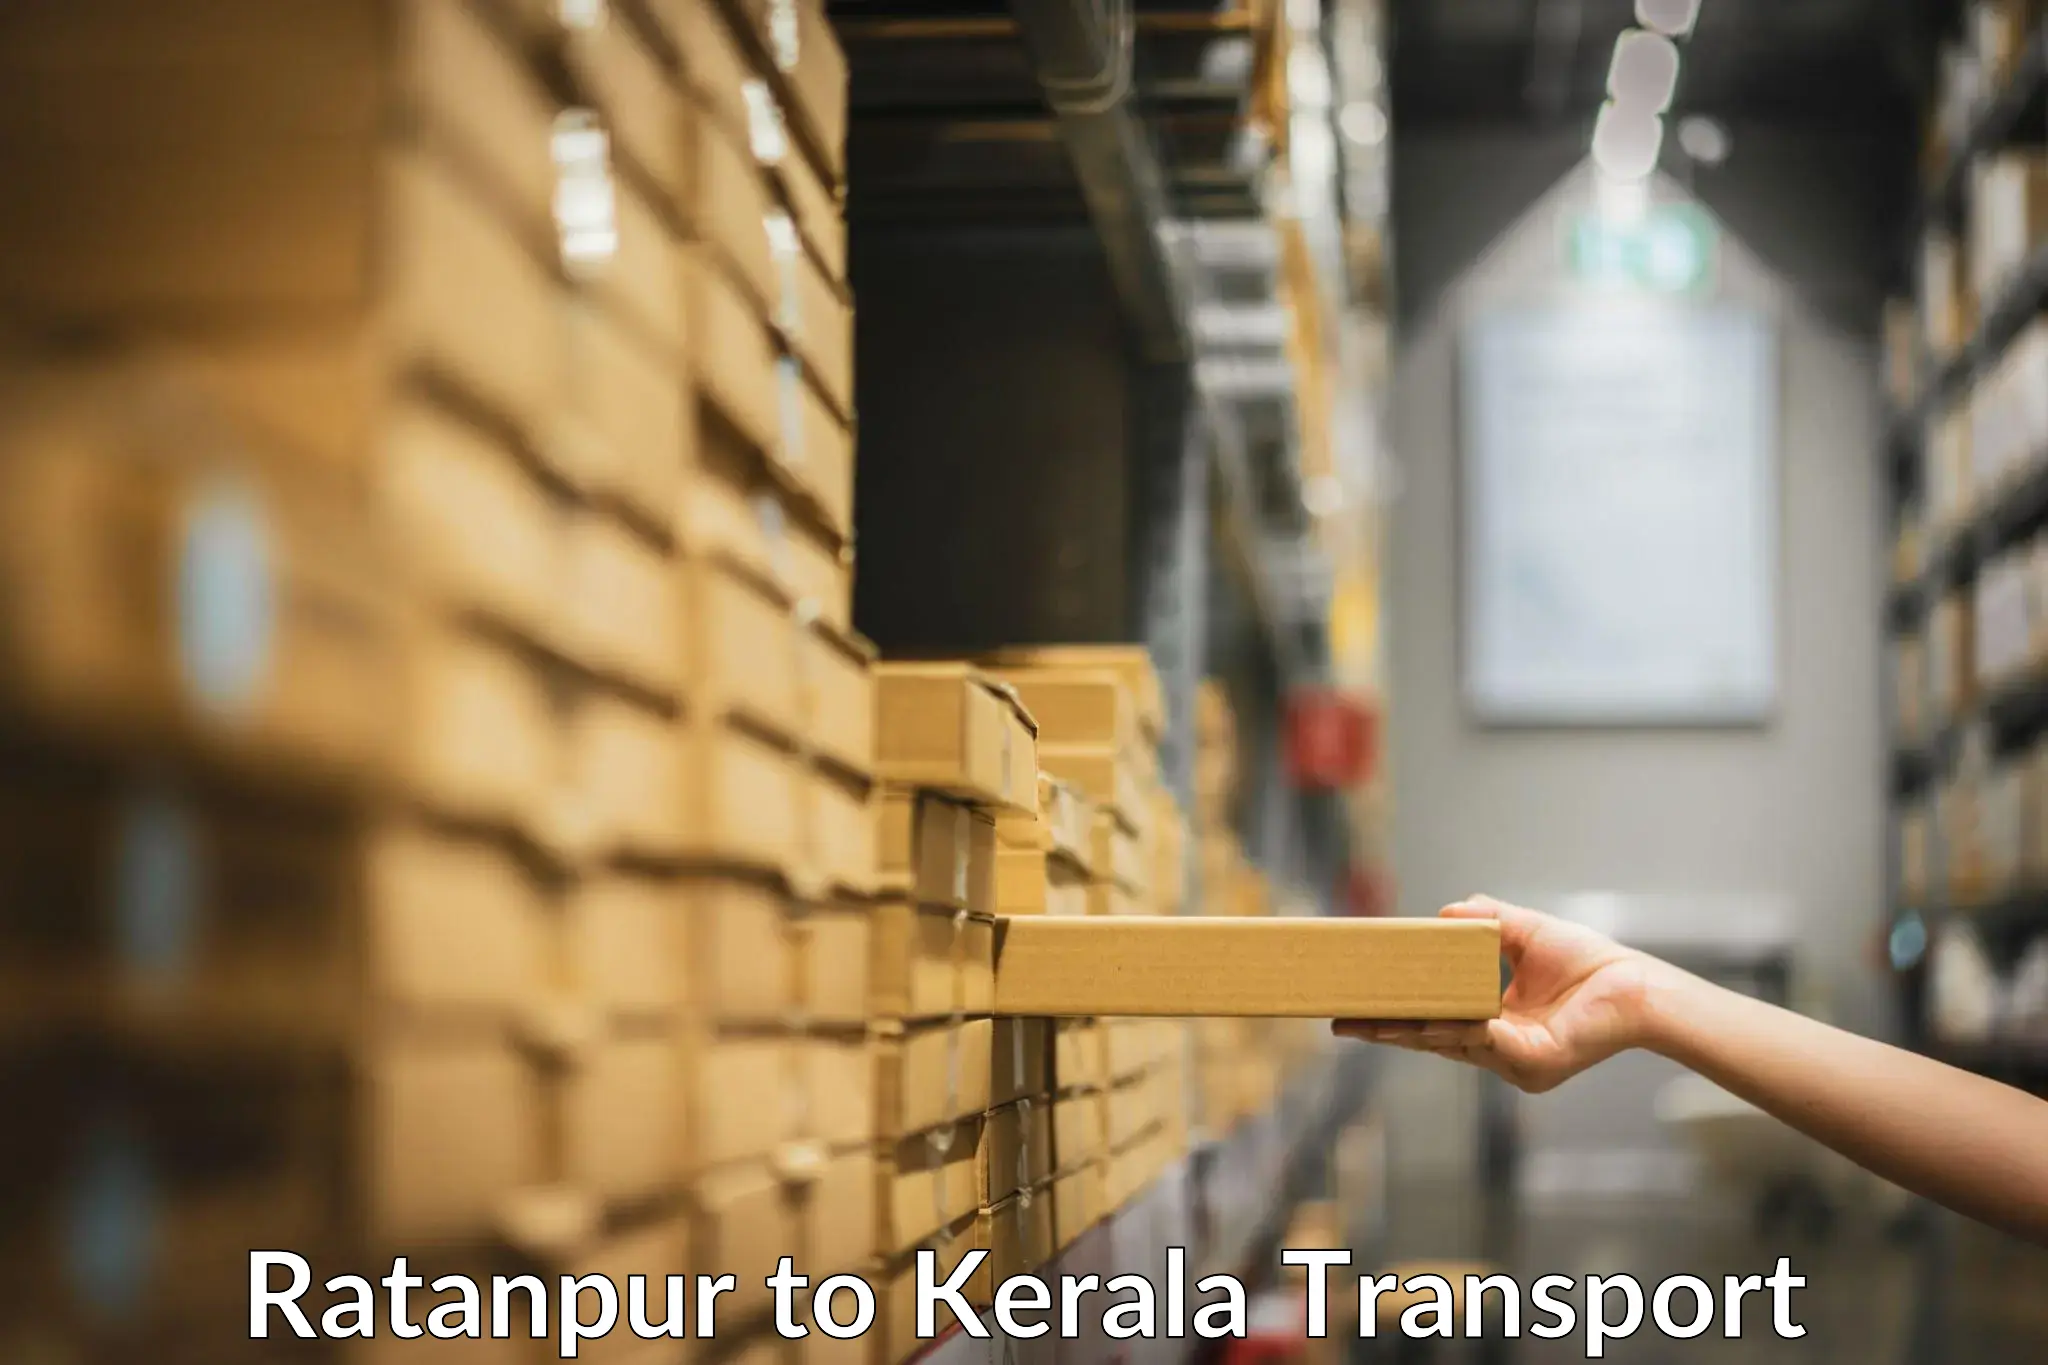 Nearest transport service Ratanpur to Mundakayam